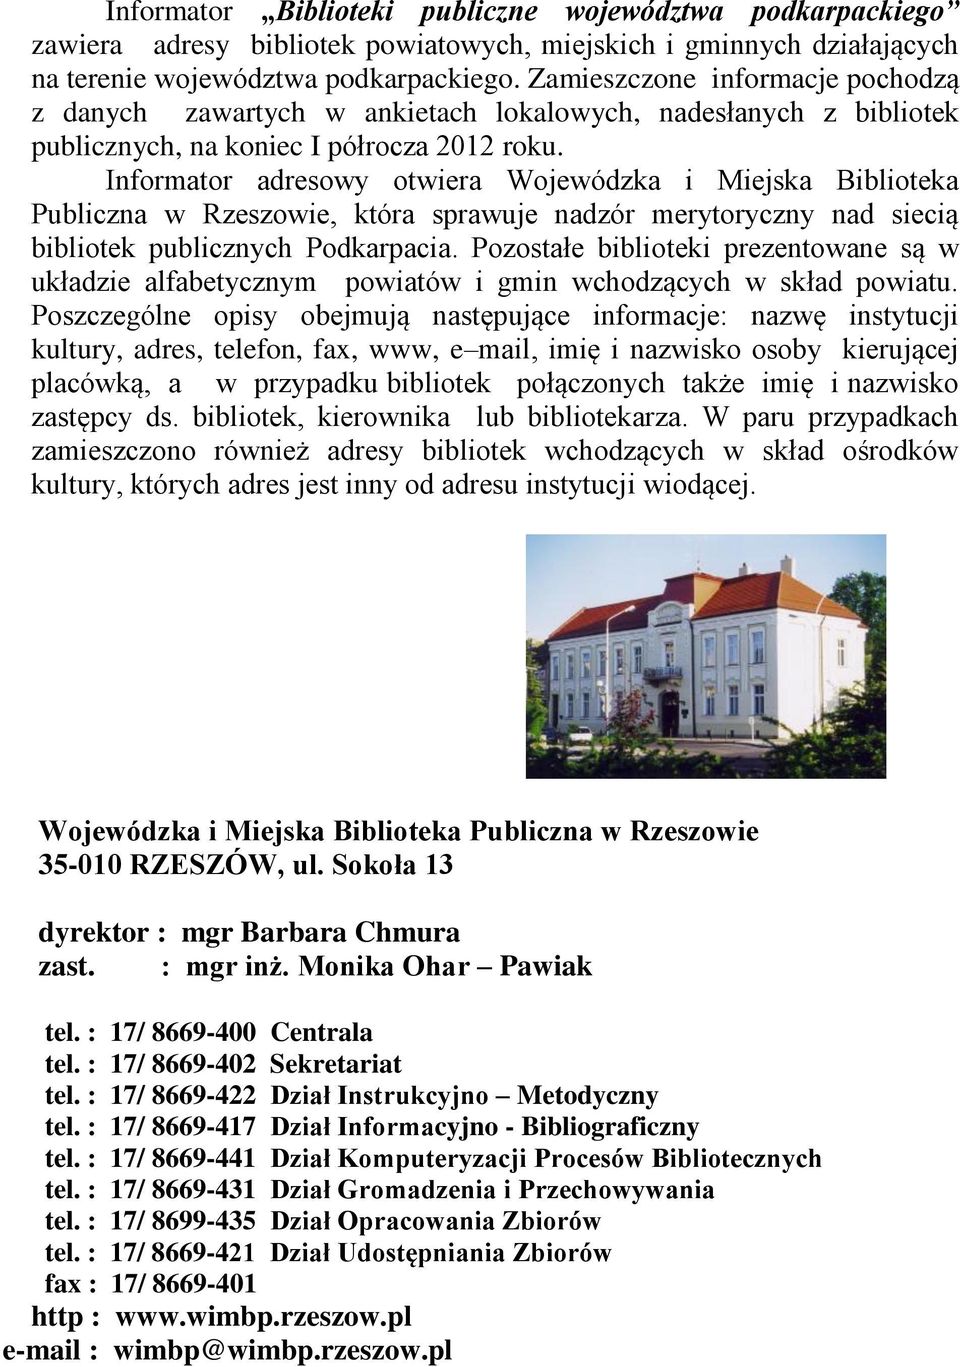 Informator adresowy otwiera Wojewódzka i Miejska Biblioteka Publiczna w Rzeszowie, która sprawuje nadzór merytoryczny nad siecią bibliotek publicznych Podkarpacia.